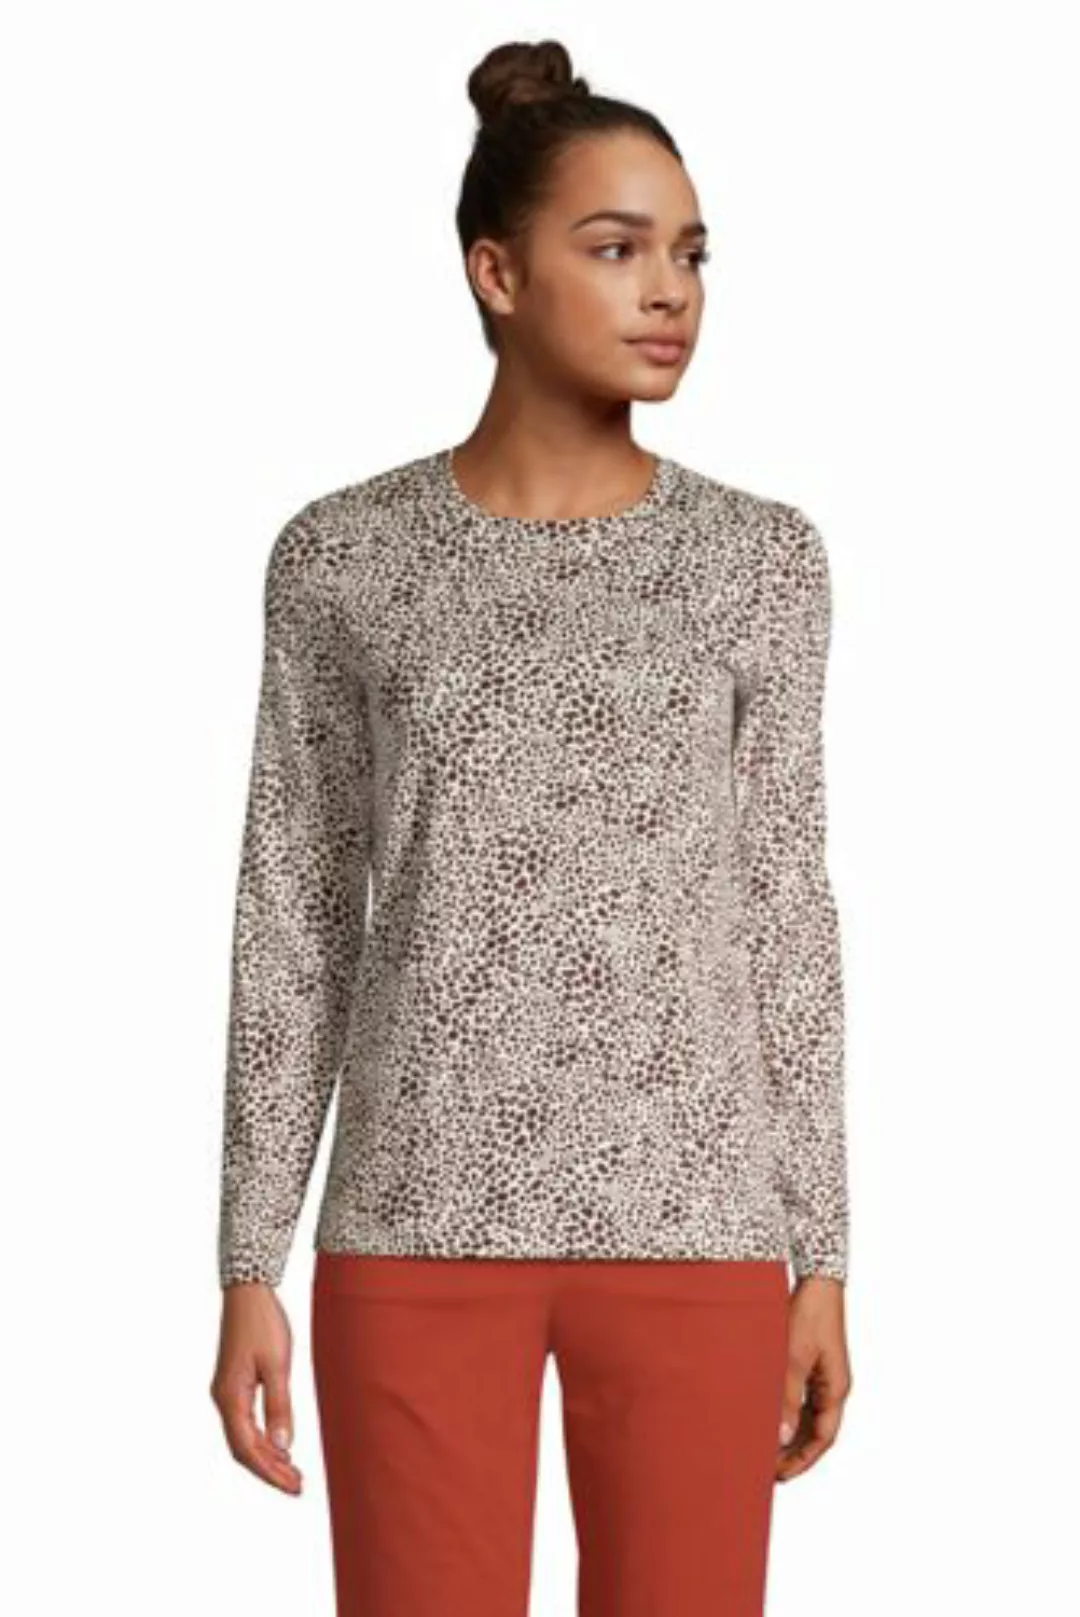 Supima-Shirt, Langarm, Damen, Größe: S Normal, Elfenbein, Baumwolle, by Lan günstig online kaufen